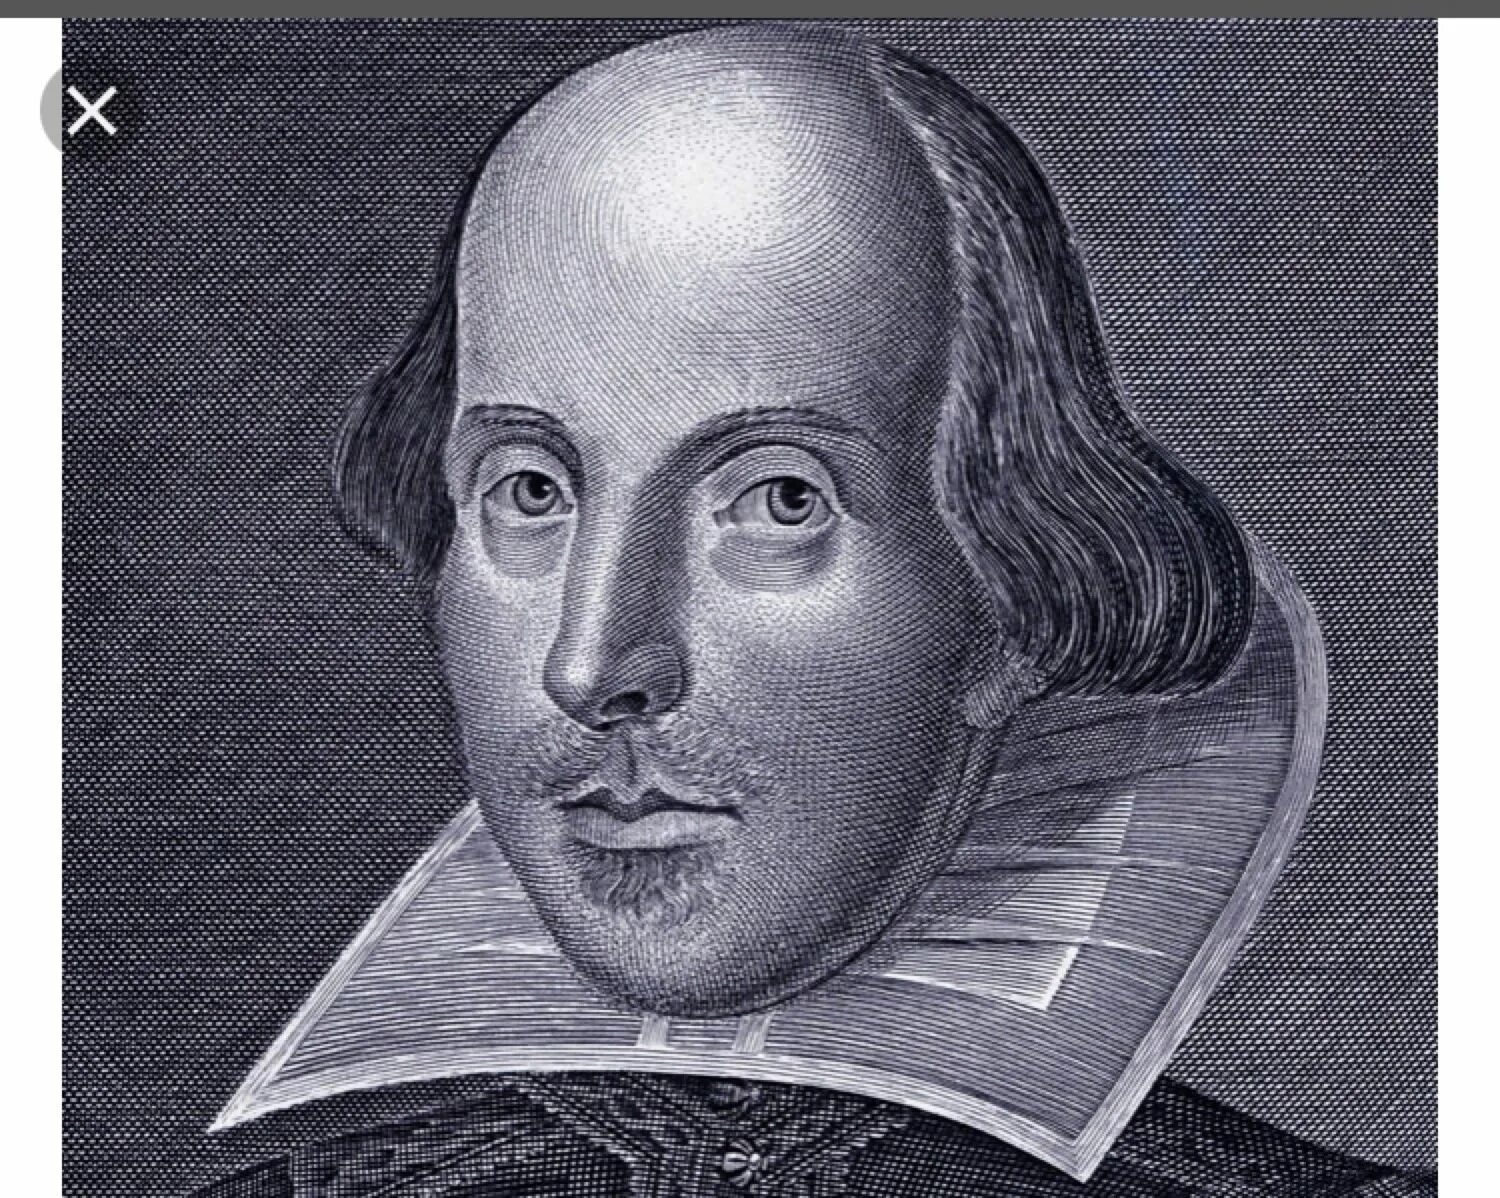 William shakespeare s